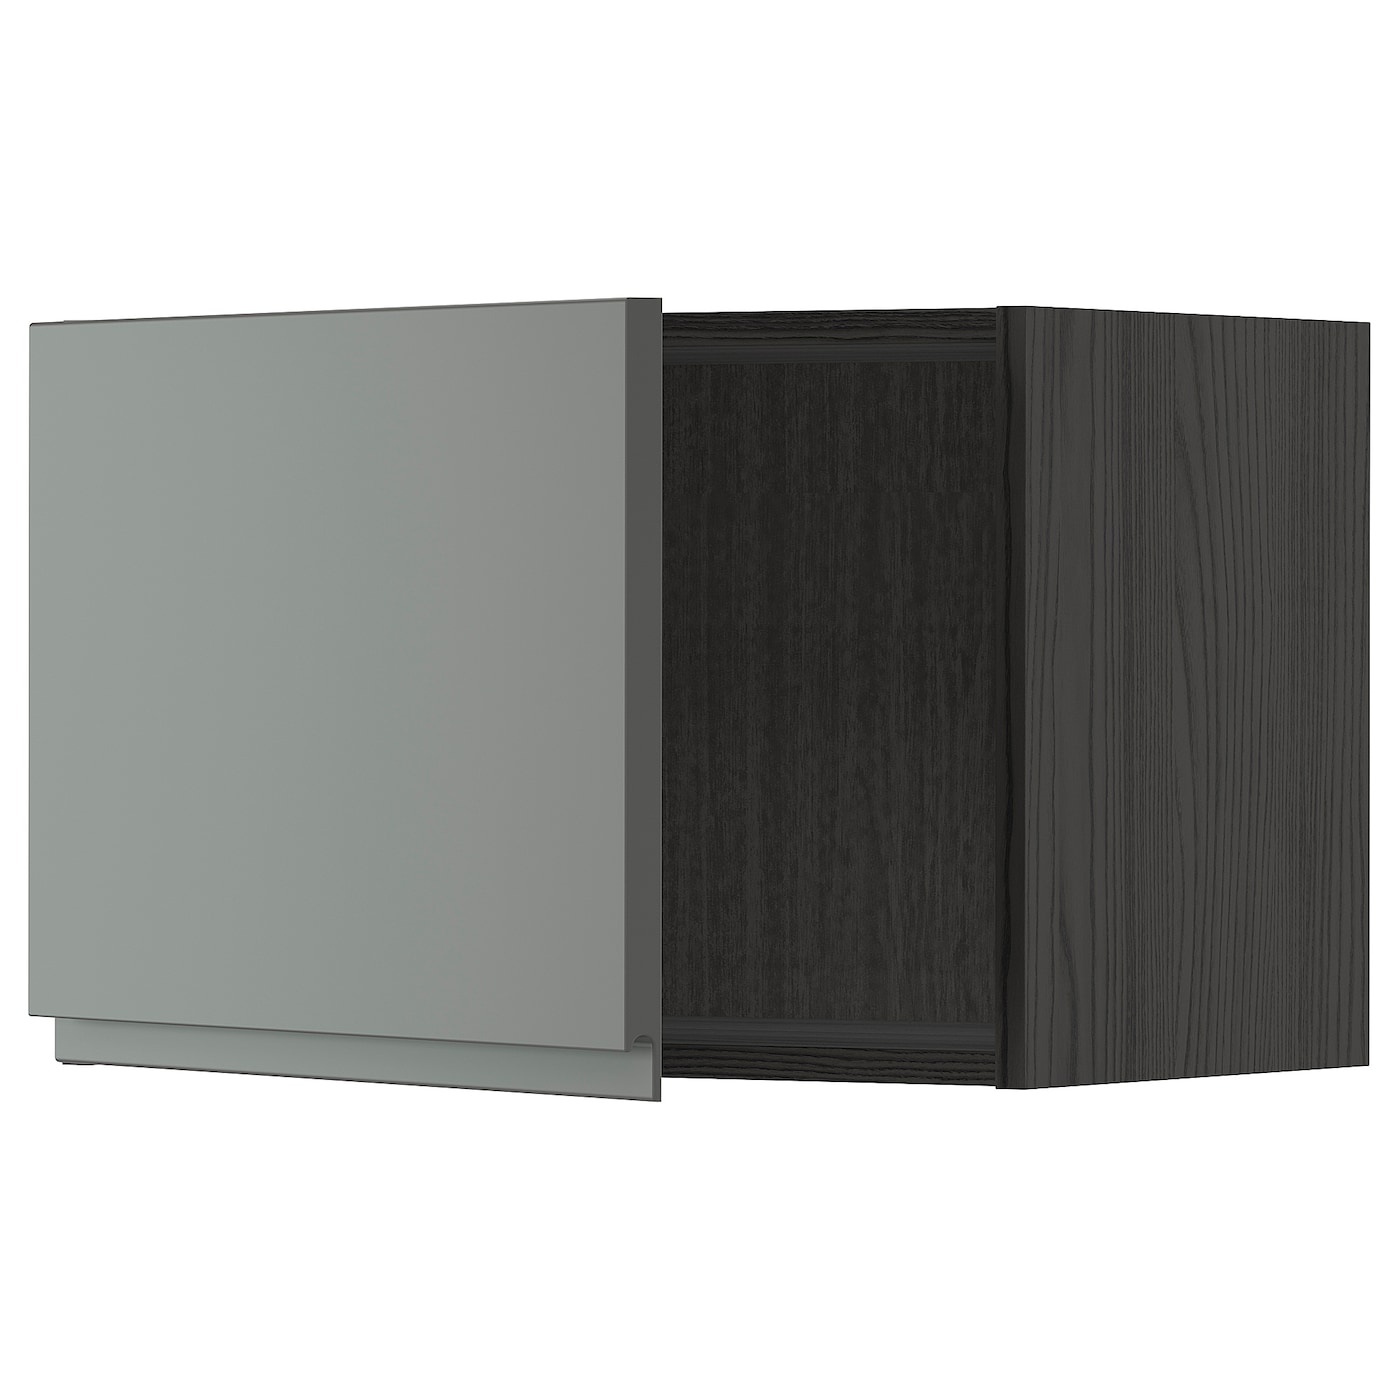 Навесной шкаф - METOD IKEA/ МЕТОД ИКЕА, 40х60 см, черный/темно-серый